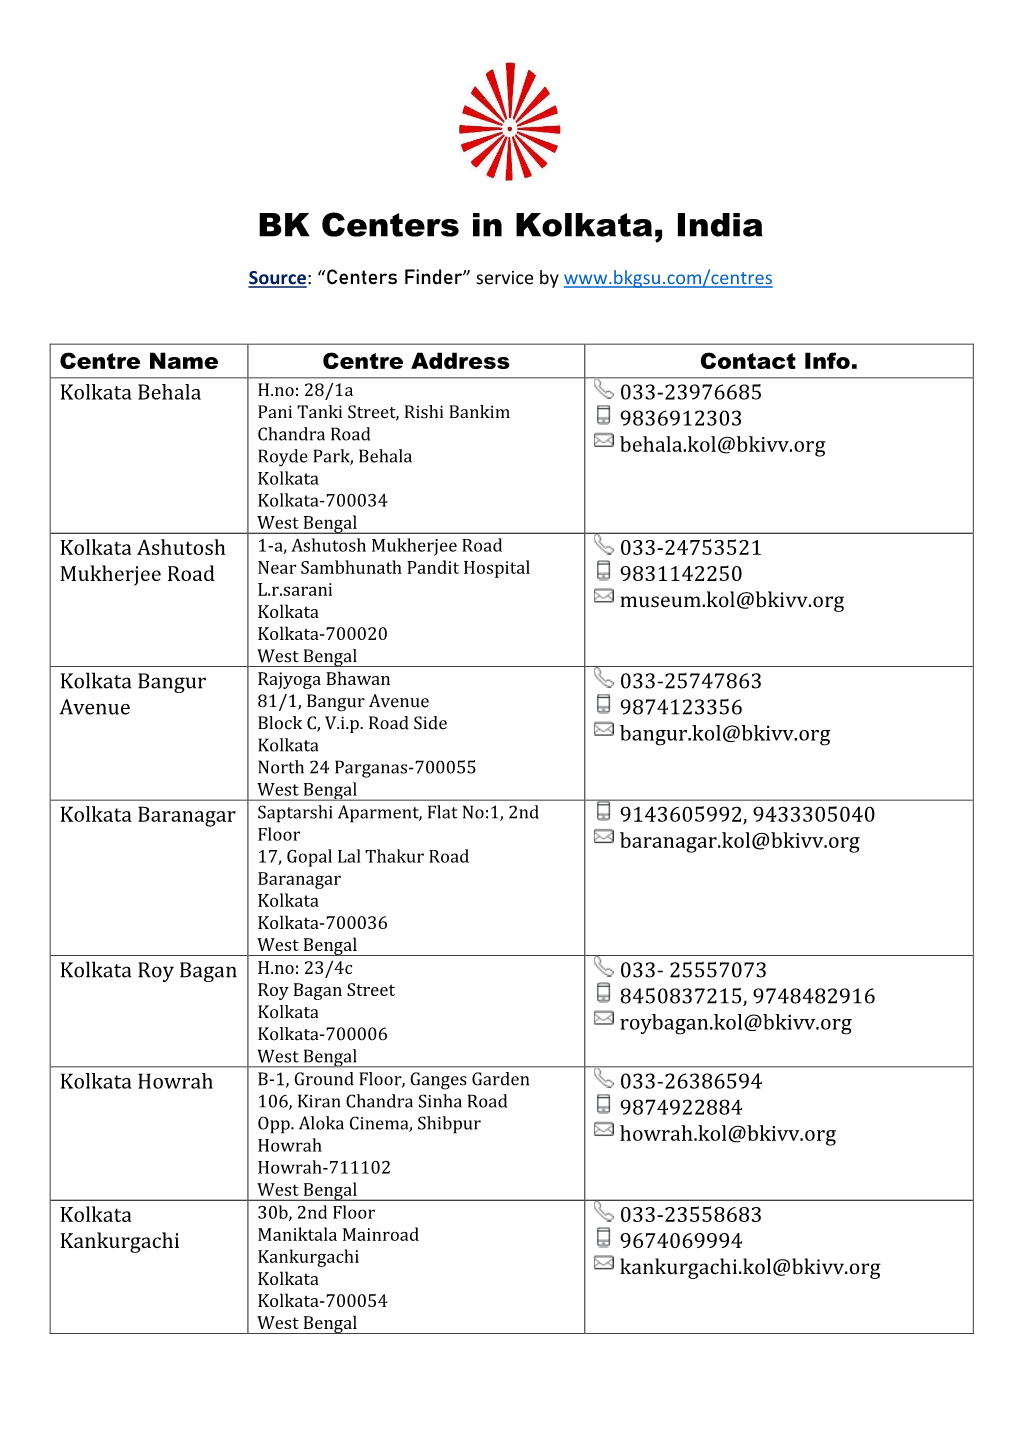 BK Centers in Kolkata, India